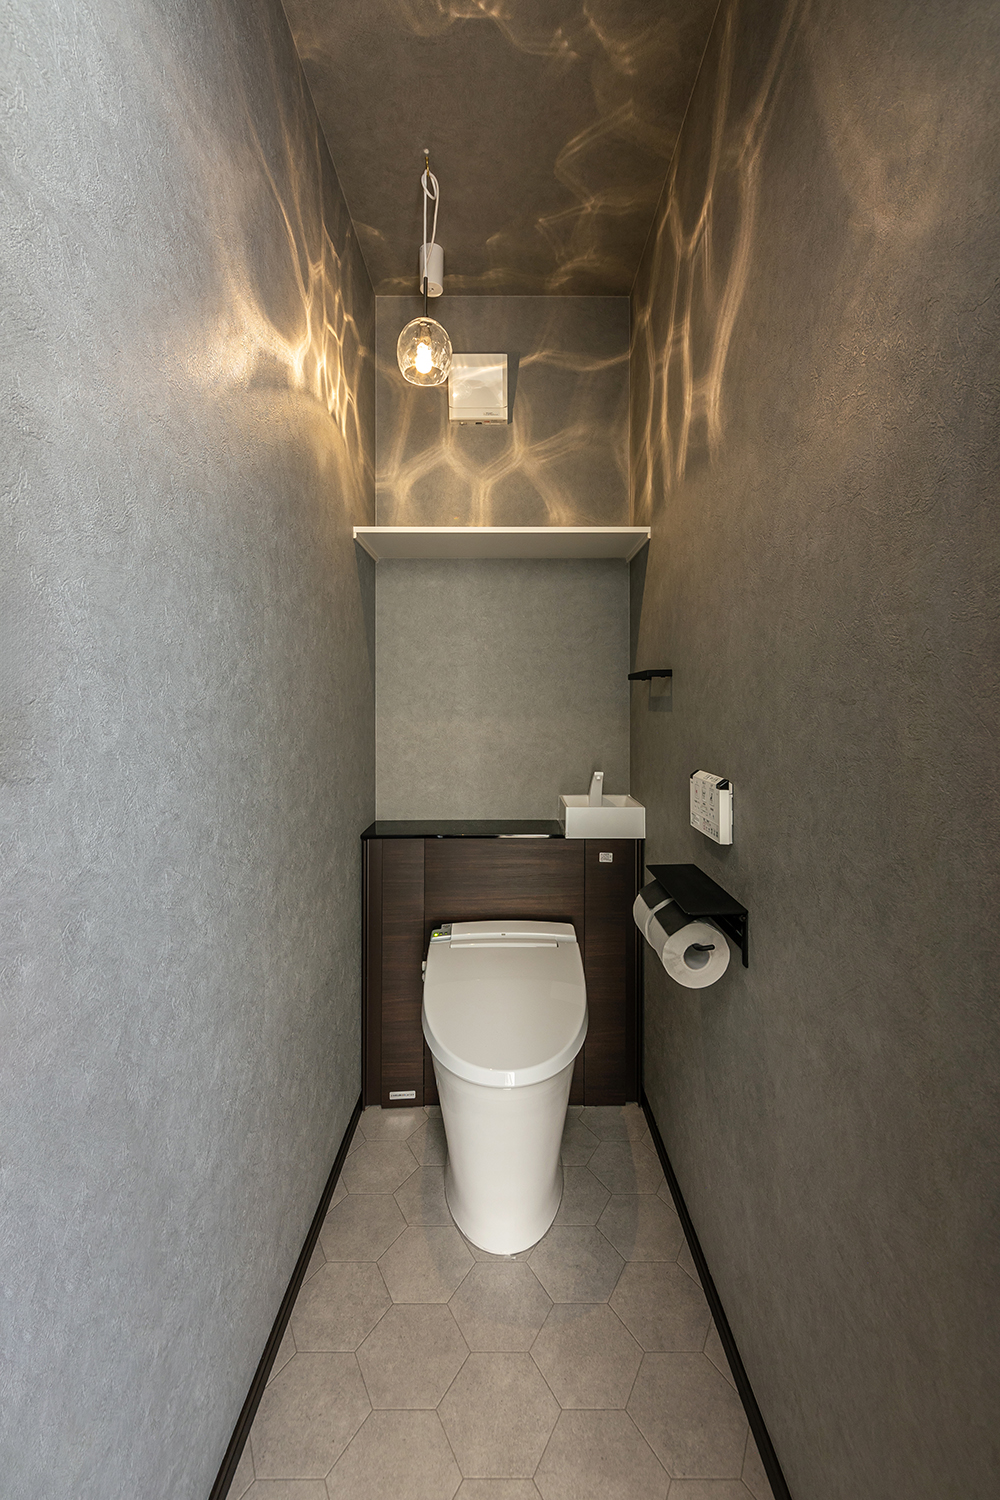 キラキラと輝くライトが目を惹くトイレ。<br />
キャビネット付きのスッキリとしたデザインと豊富な収納力が魅力です。<br />
